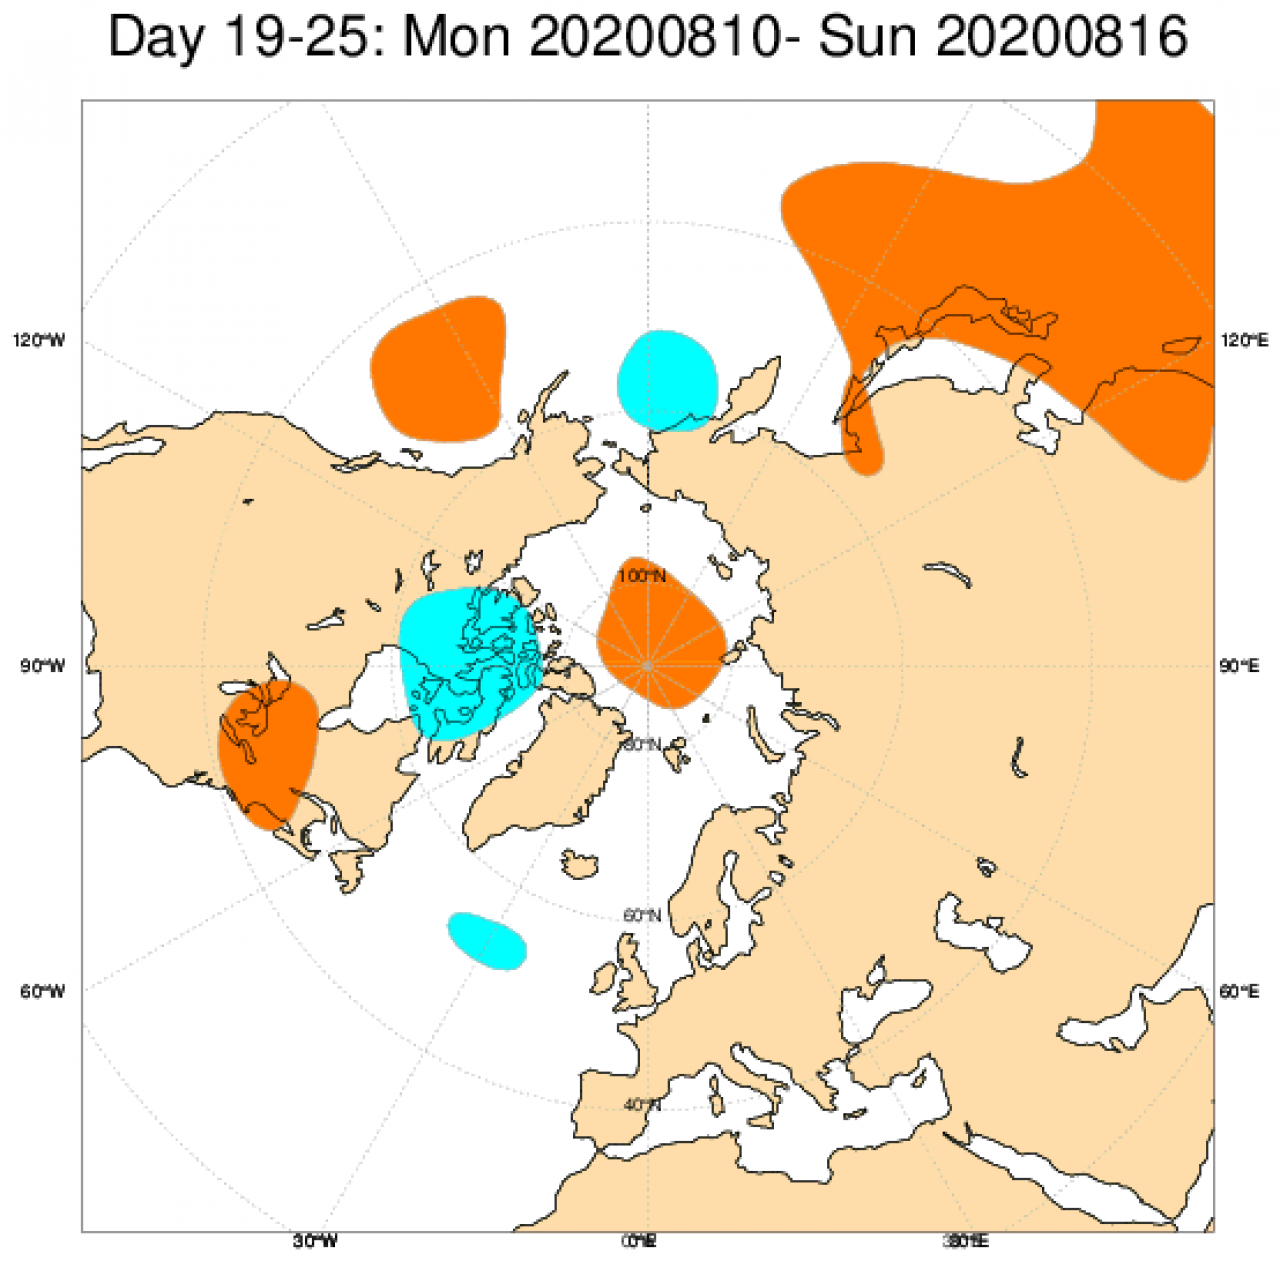 Le anomalie di geopotenziale a 500hPa da modello ECMWF mediate sul periodo 10-16 agosto